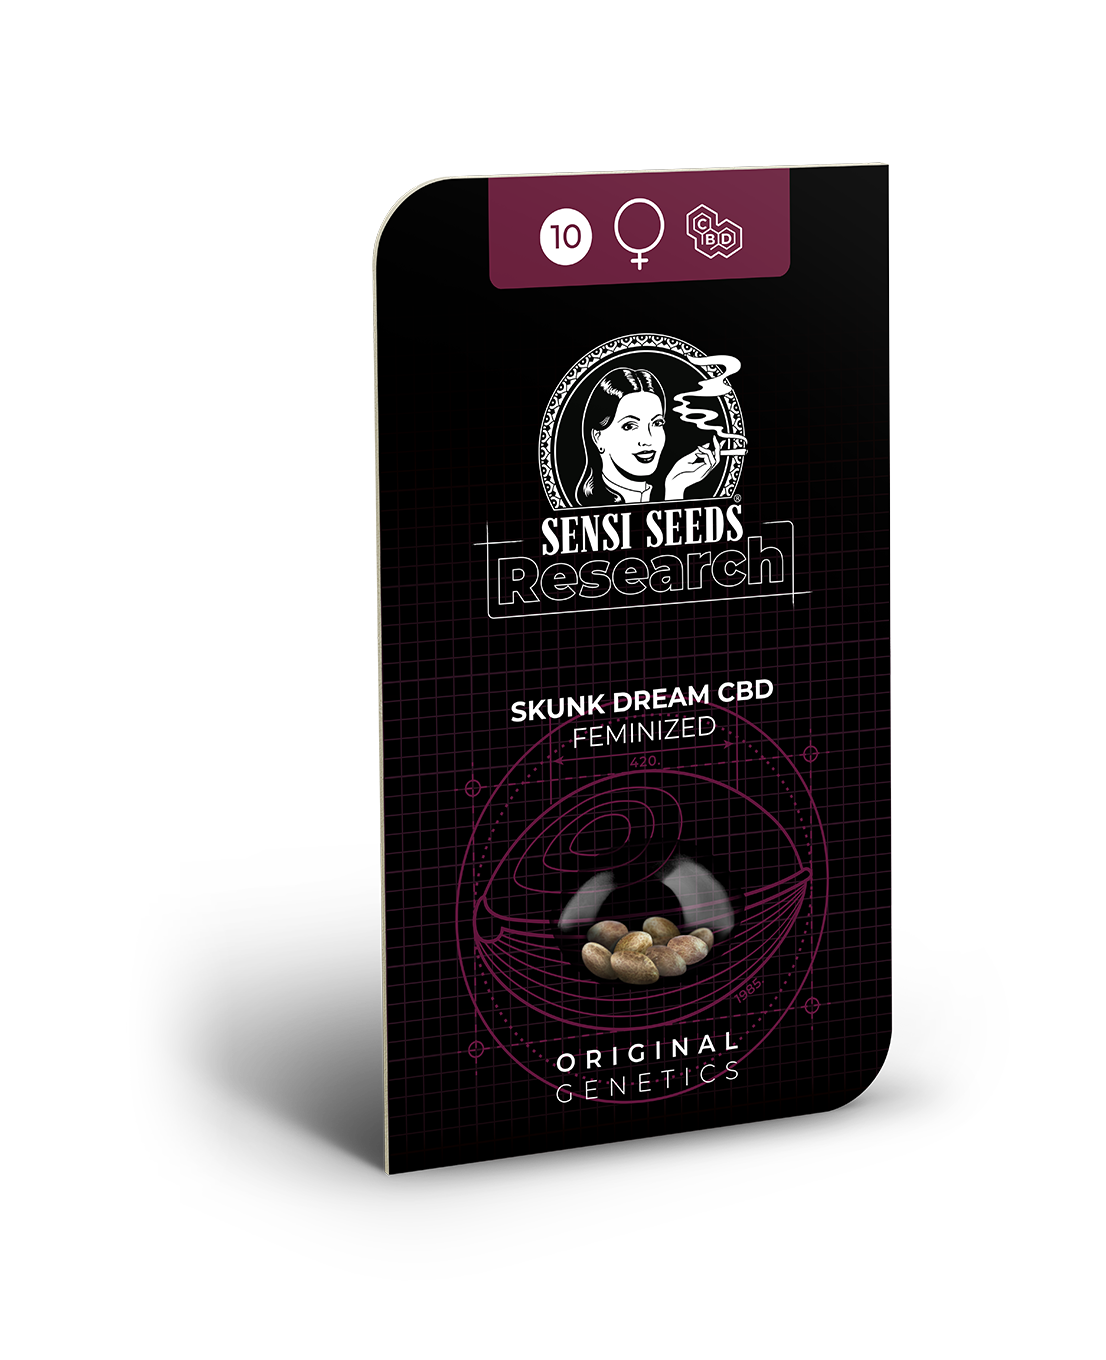 Freigestellte Verpackung von Skunk Dream CBD Femin. Hanfsamen und Cannabis Samen zum Anbauen